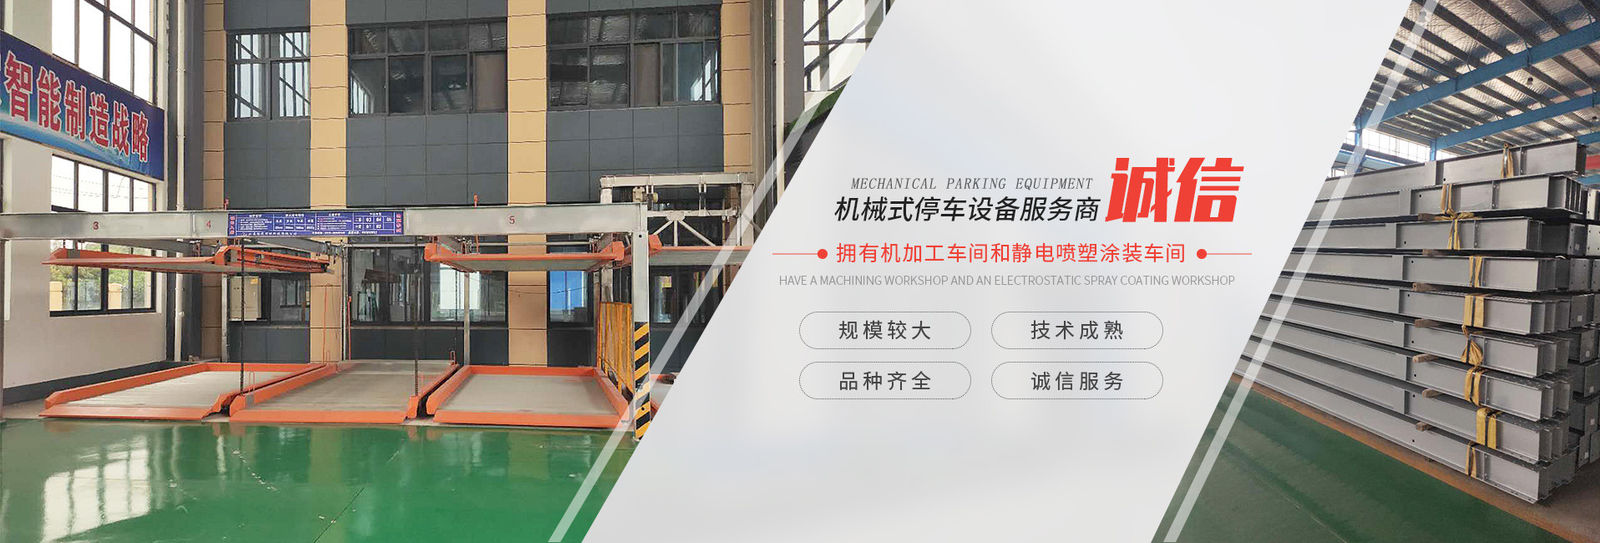 Chine Shanghai Changyue Automation Machinery Co., Ltd. Profil de la société